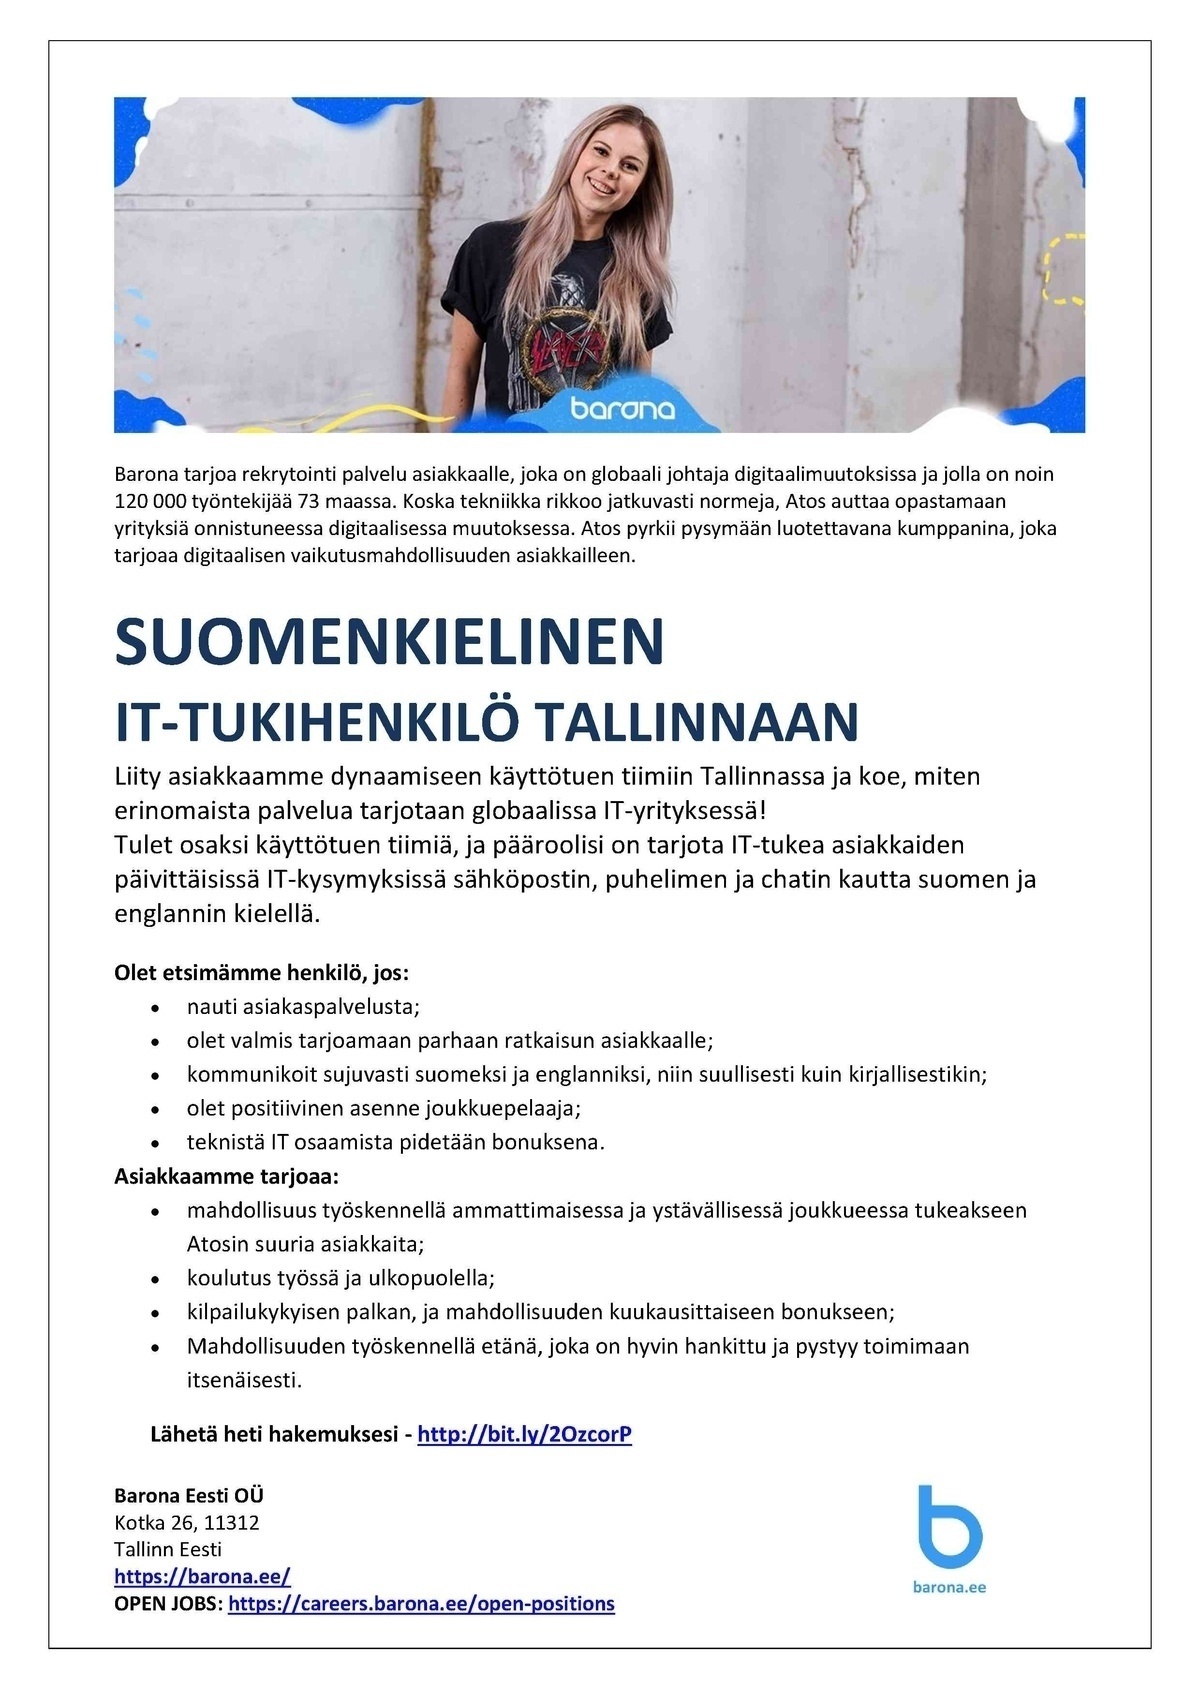 Barona Eesti OÜ Suomenkielinen IT-tukihenkilö Tallinnaan